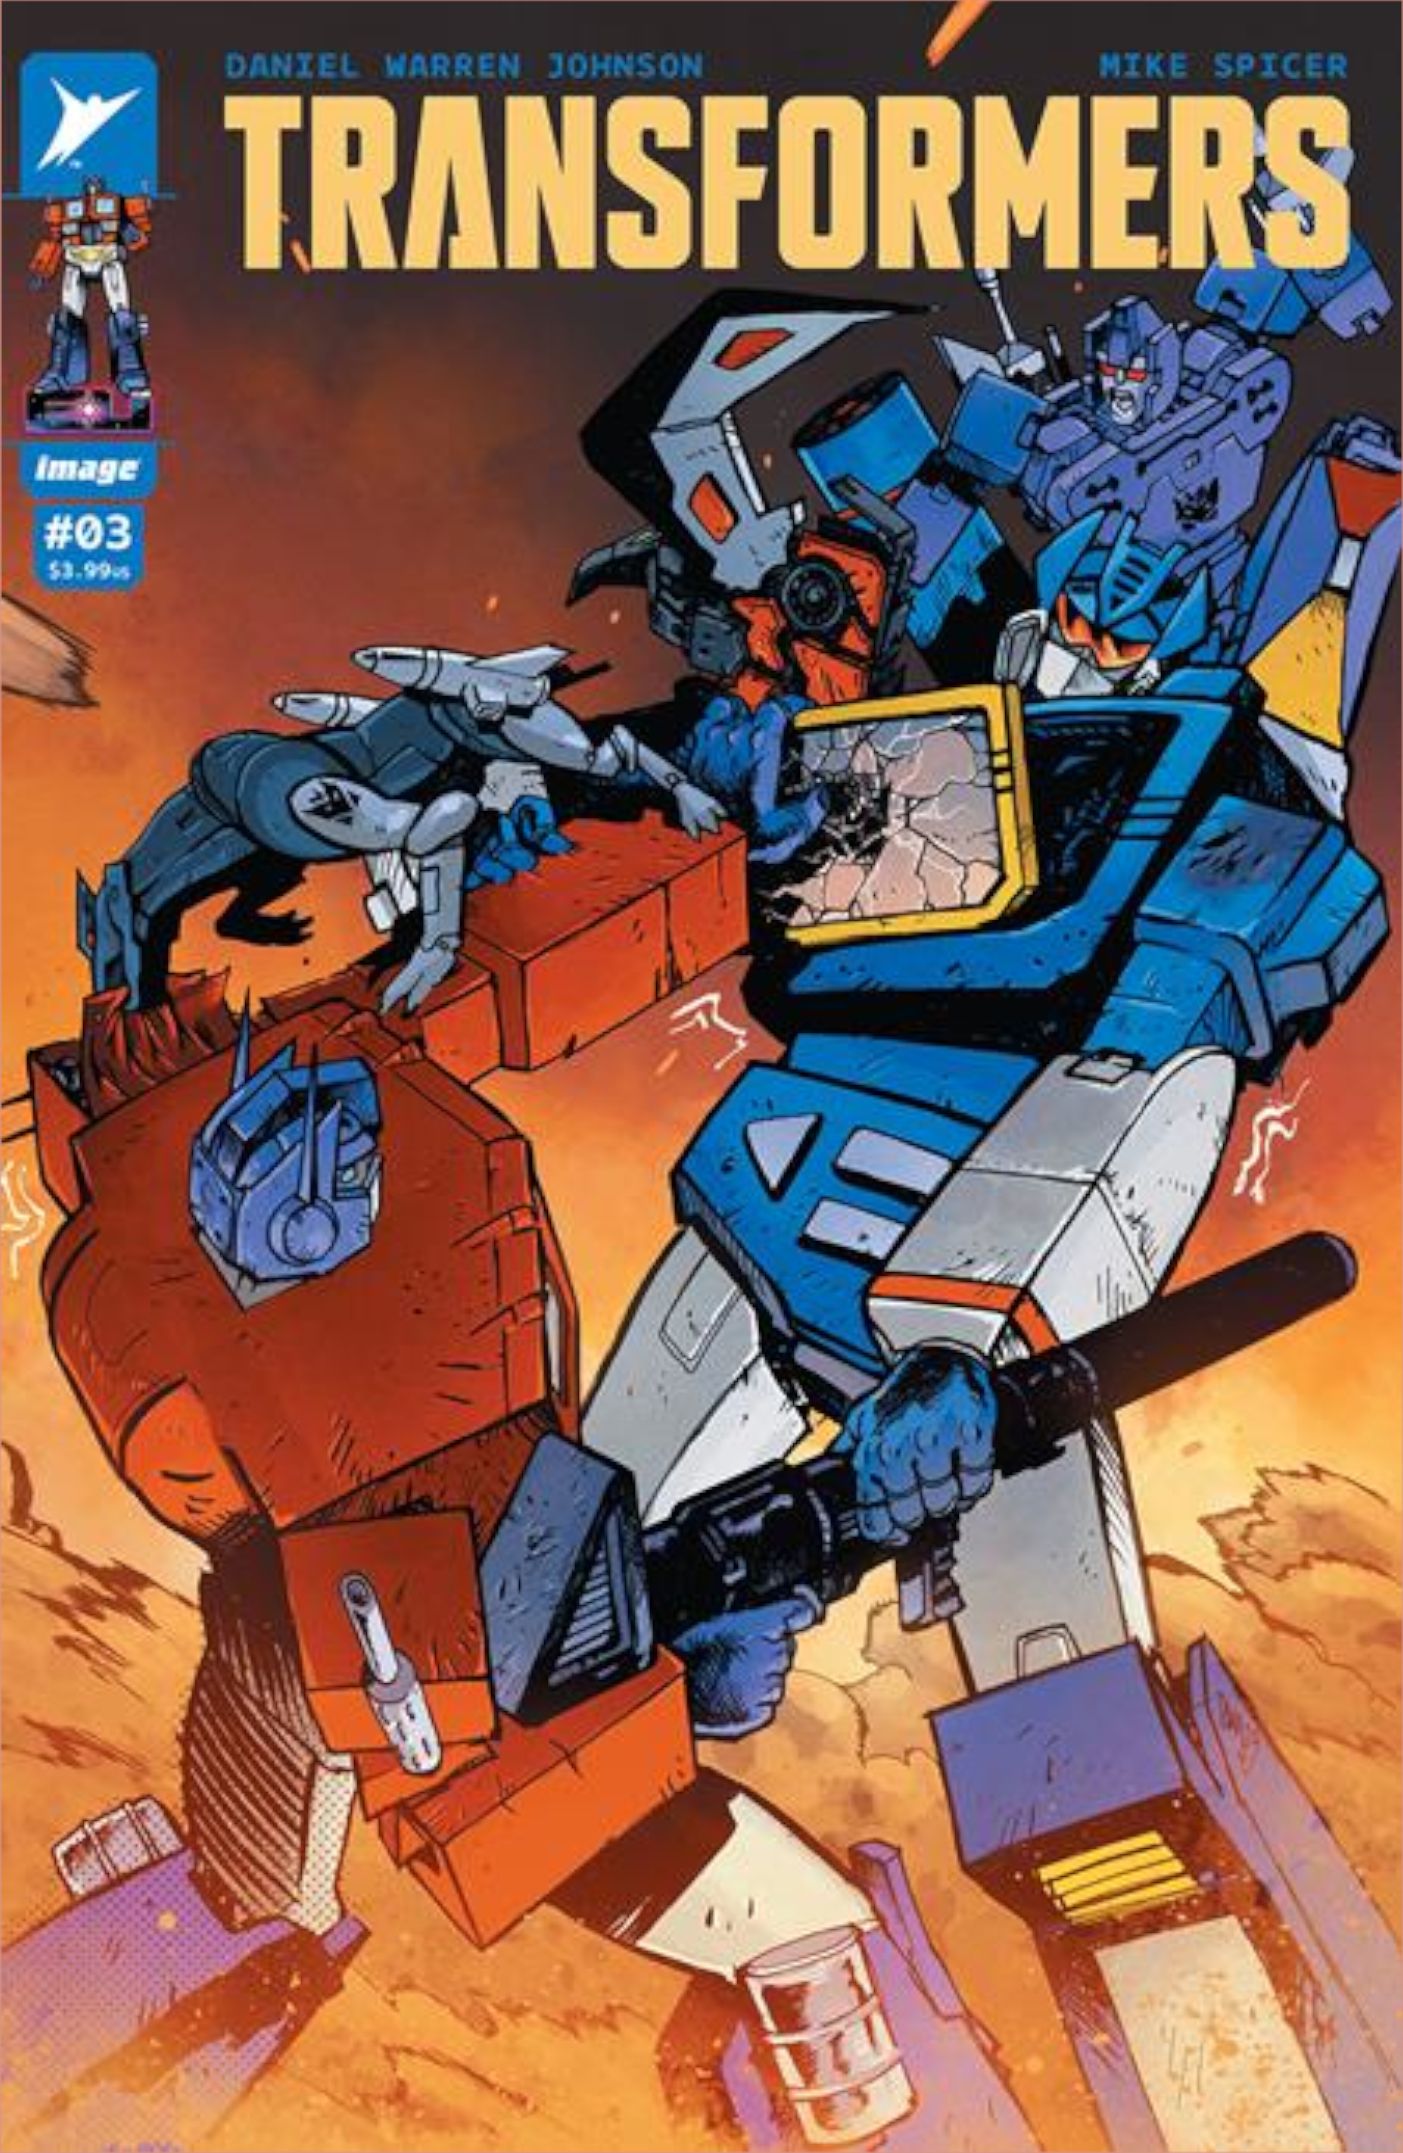 Transformers #3-Cover von Daniel Warren Johnson